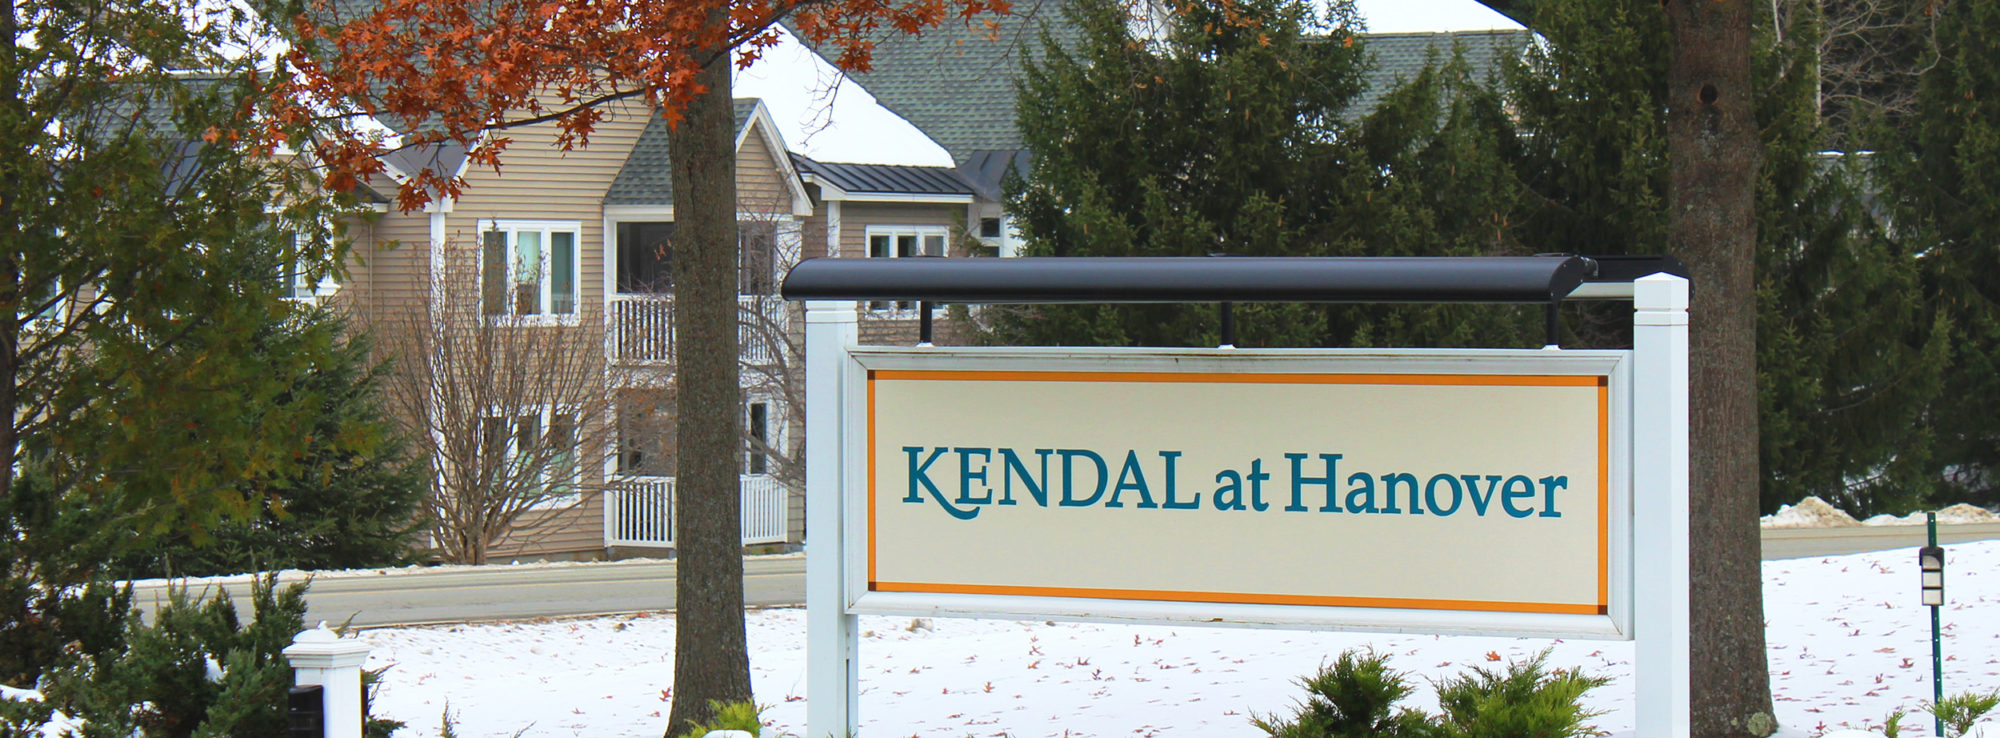 Kendal at Hanover sign